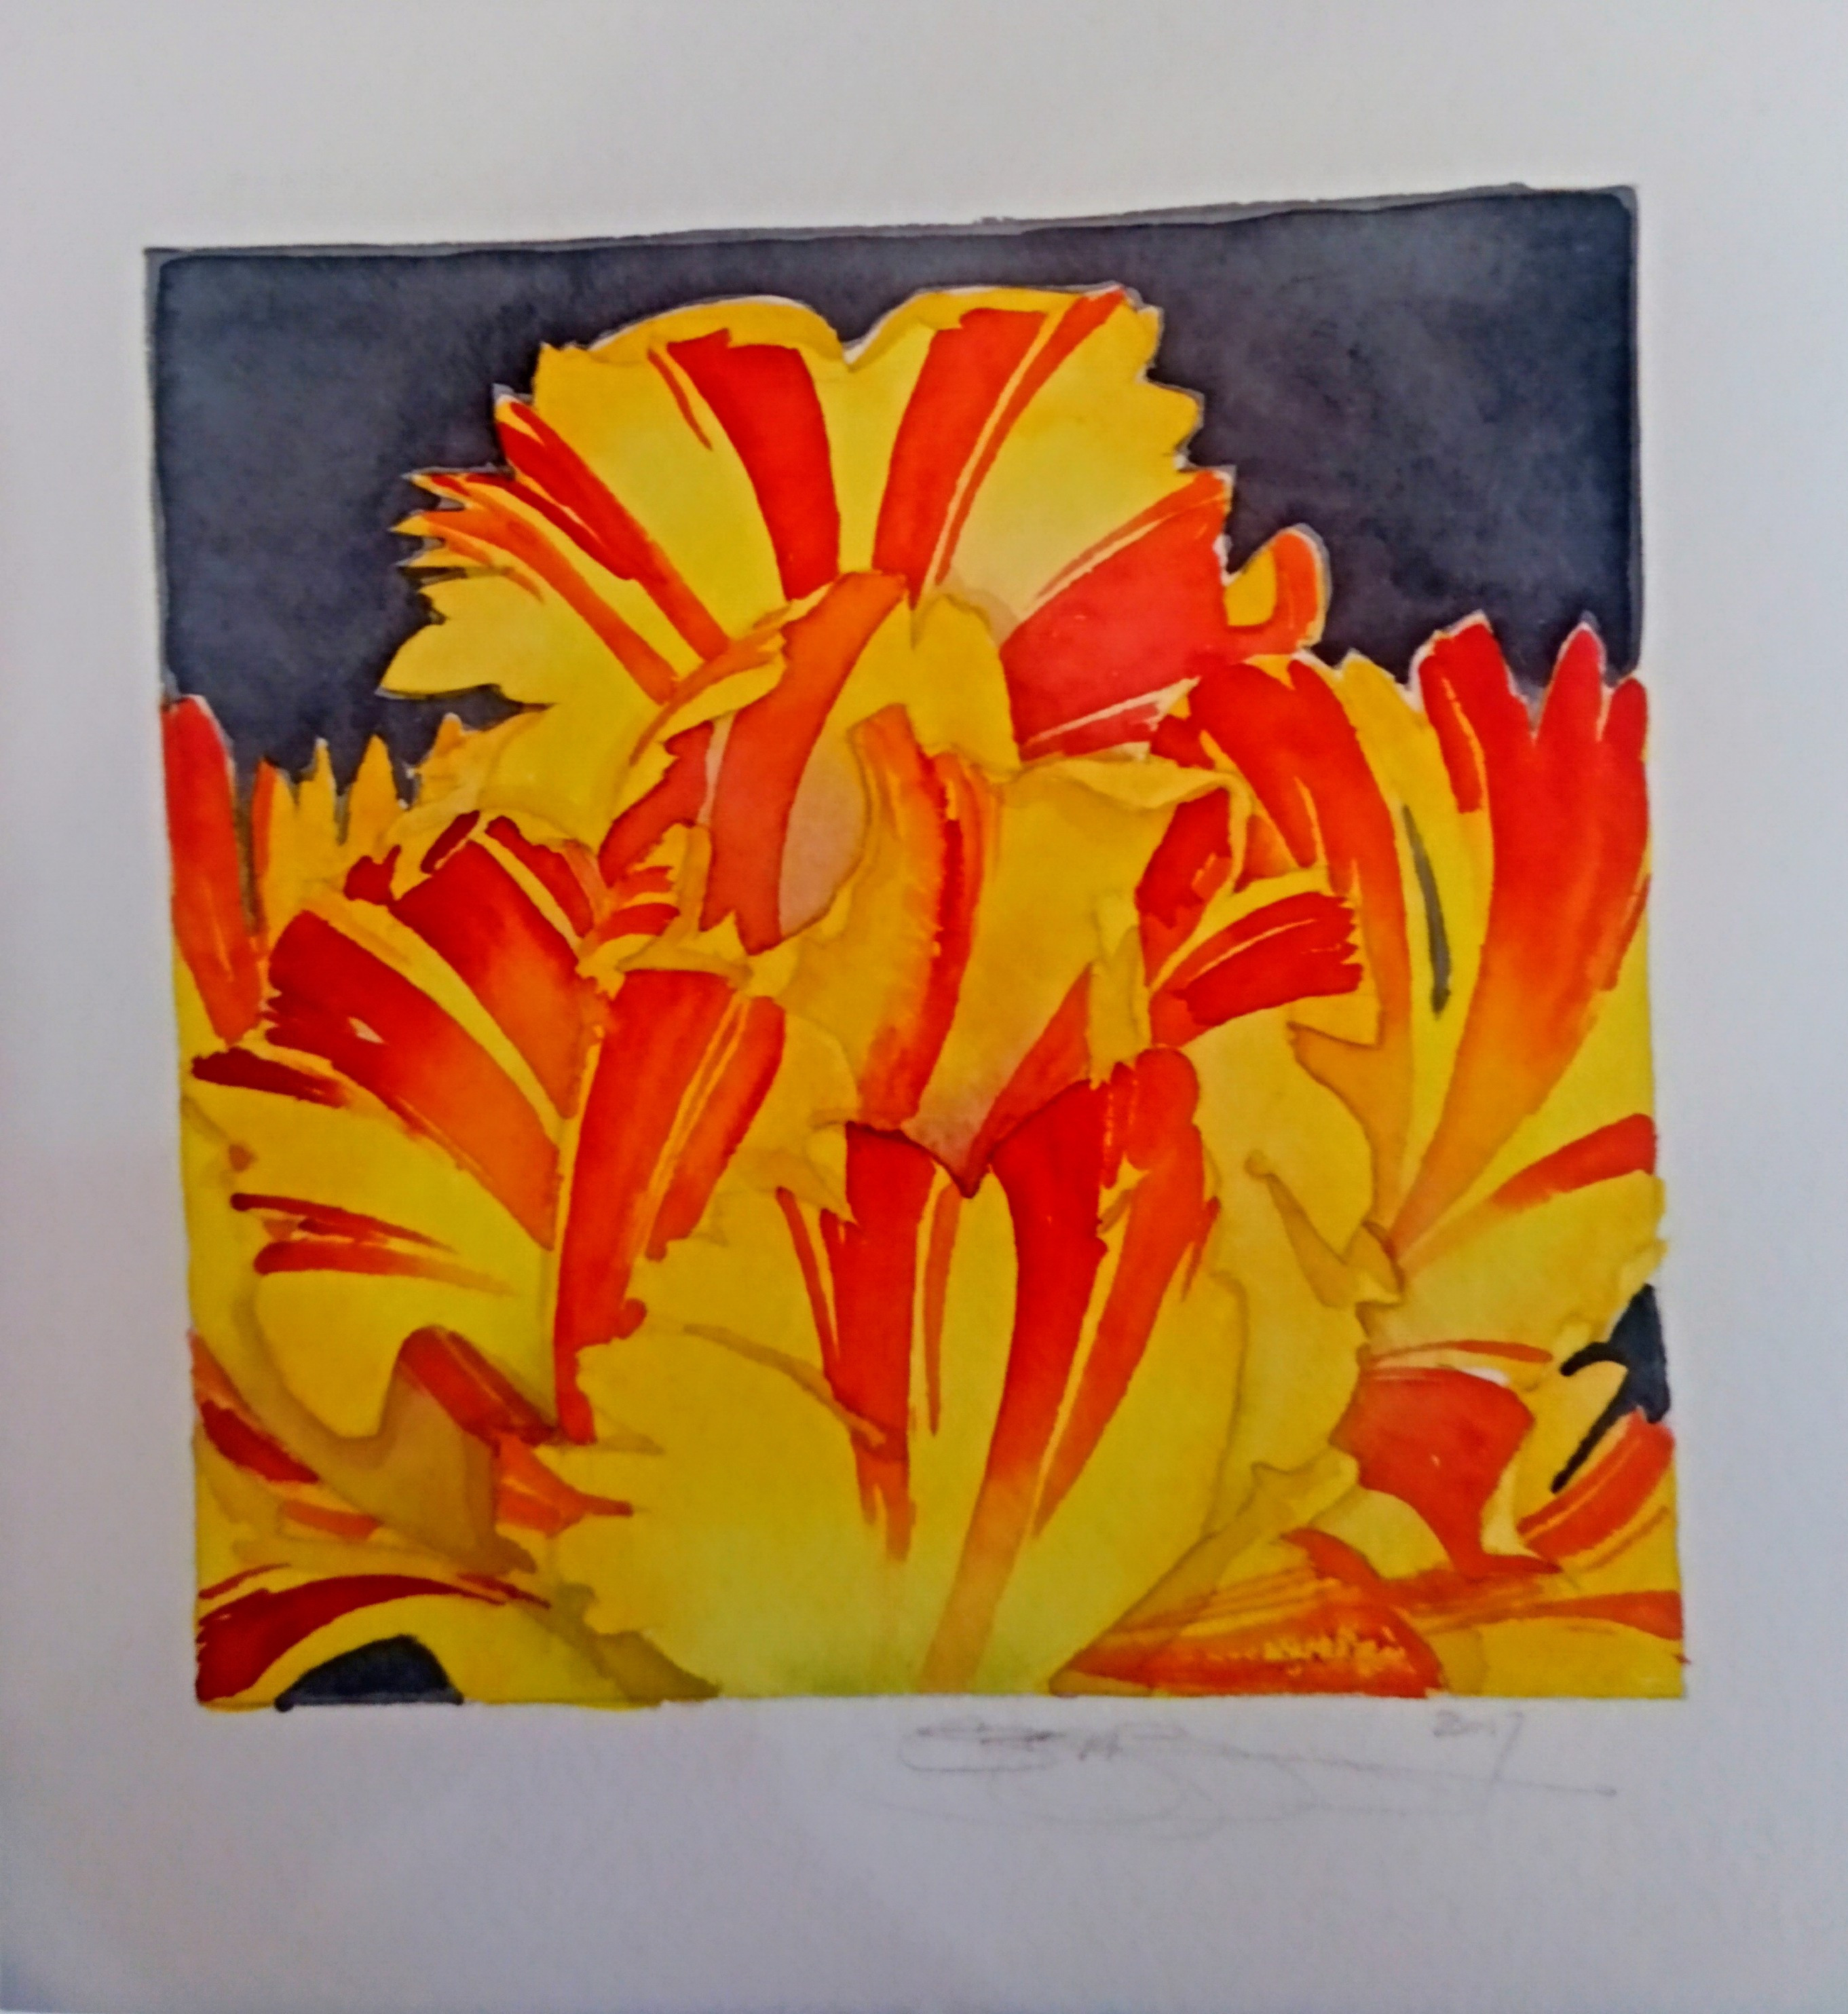 Yellow & Red Tulip Study, 2018